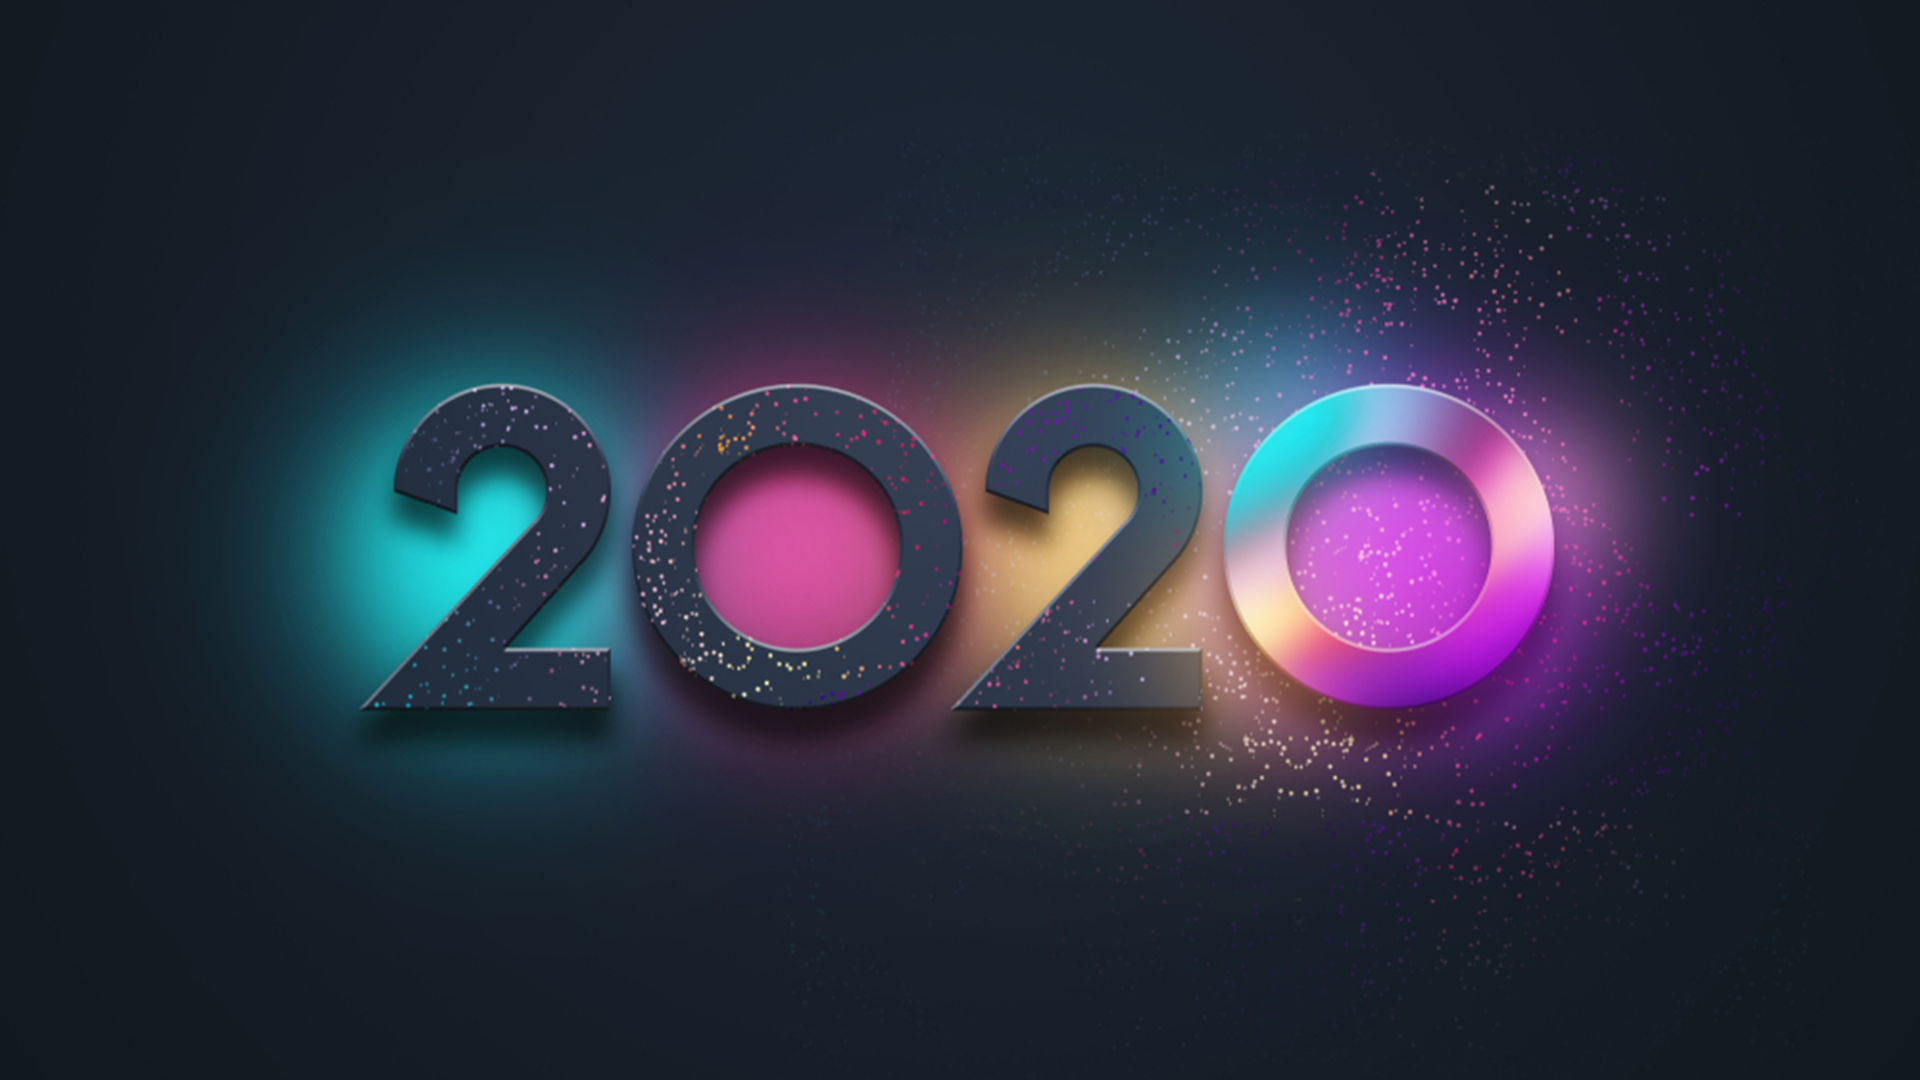 Hình nền chúc mừng năm mới 2020 đẹp